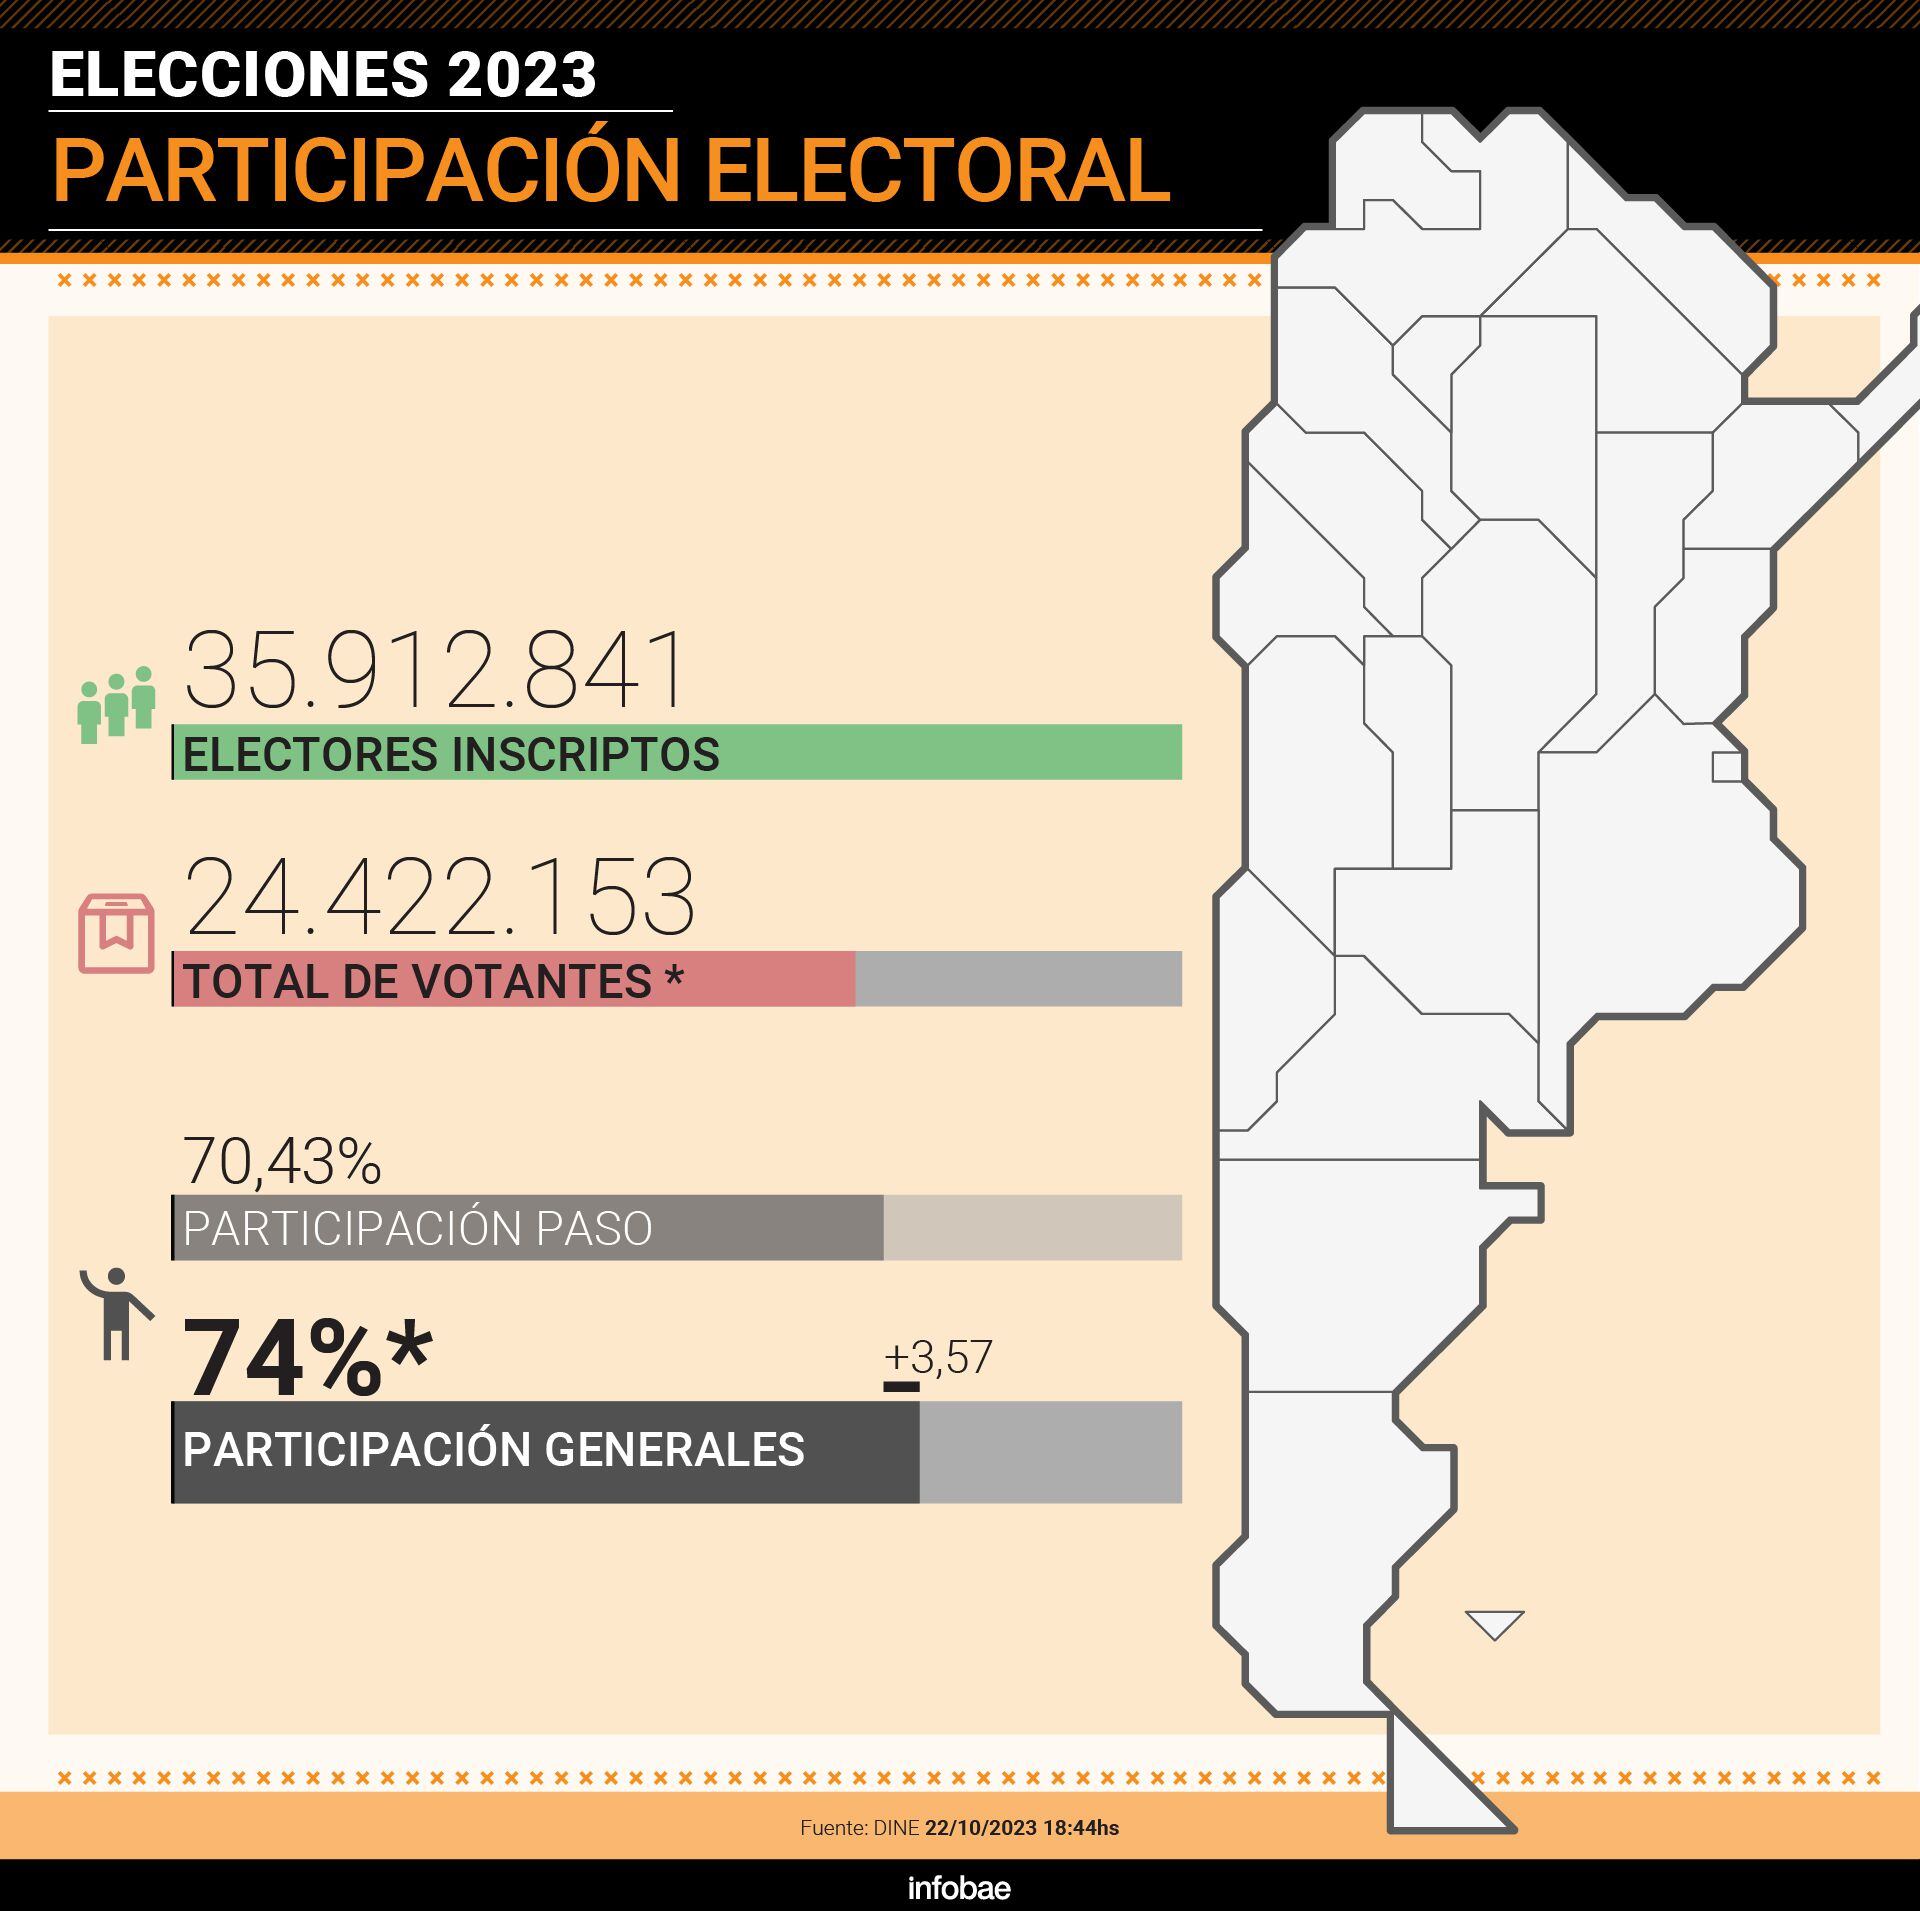 La diferencia en la concurrencia entre estas elecciones generales y las PASO de agosto fue de 1.264.127 votos más